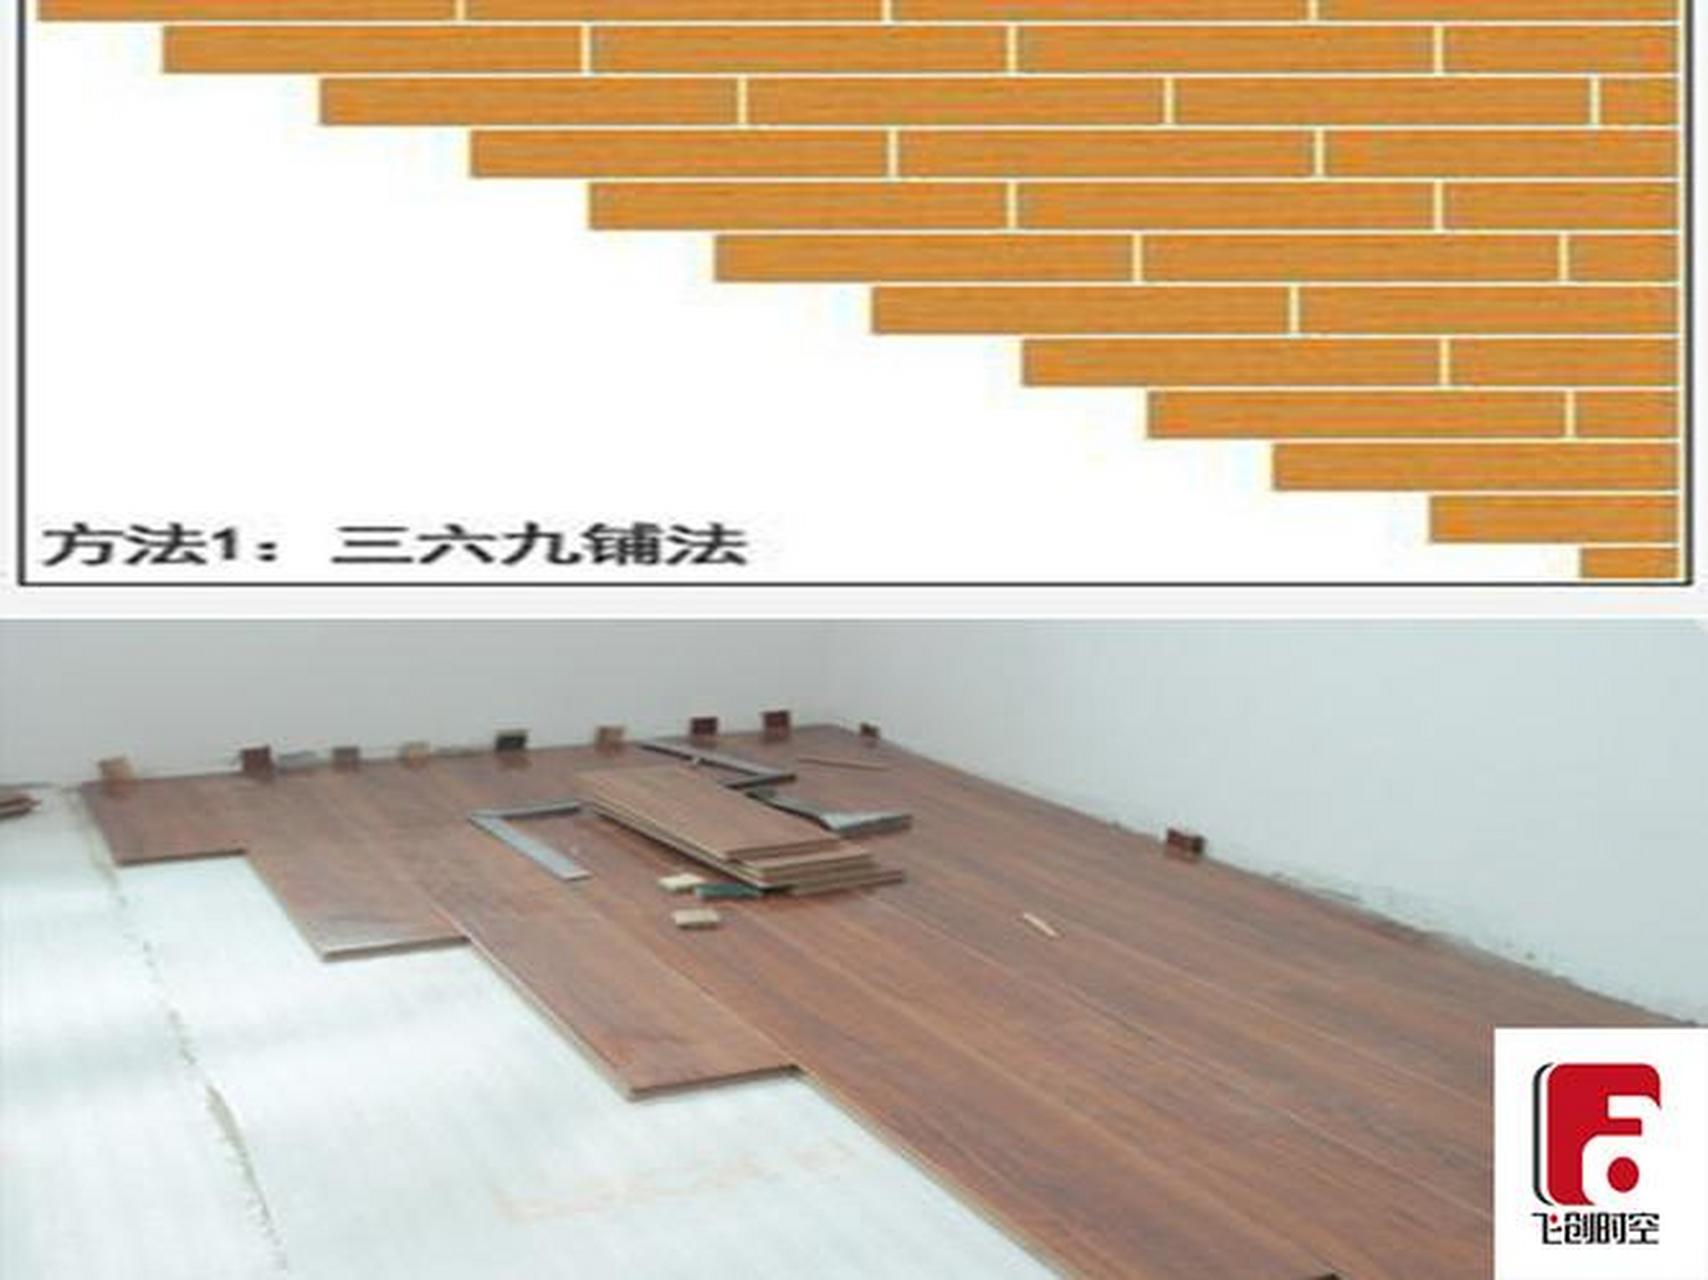 地板369拼法也称步步高拼法,相邻地板呈阶梯状错缝安装,视觉延伸感强